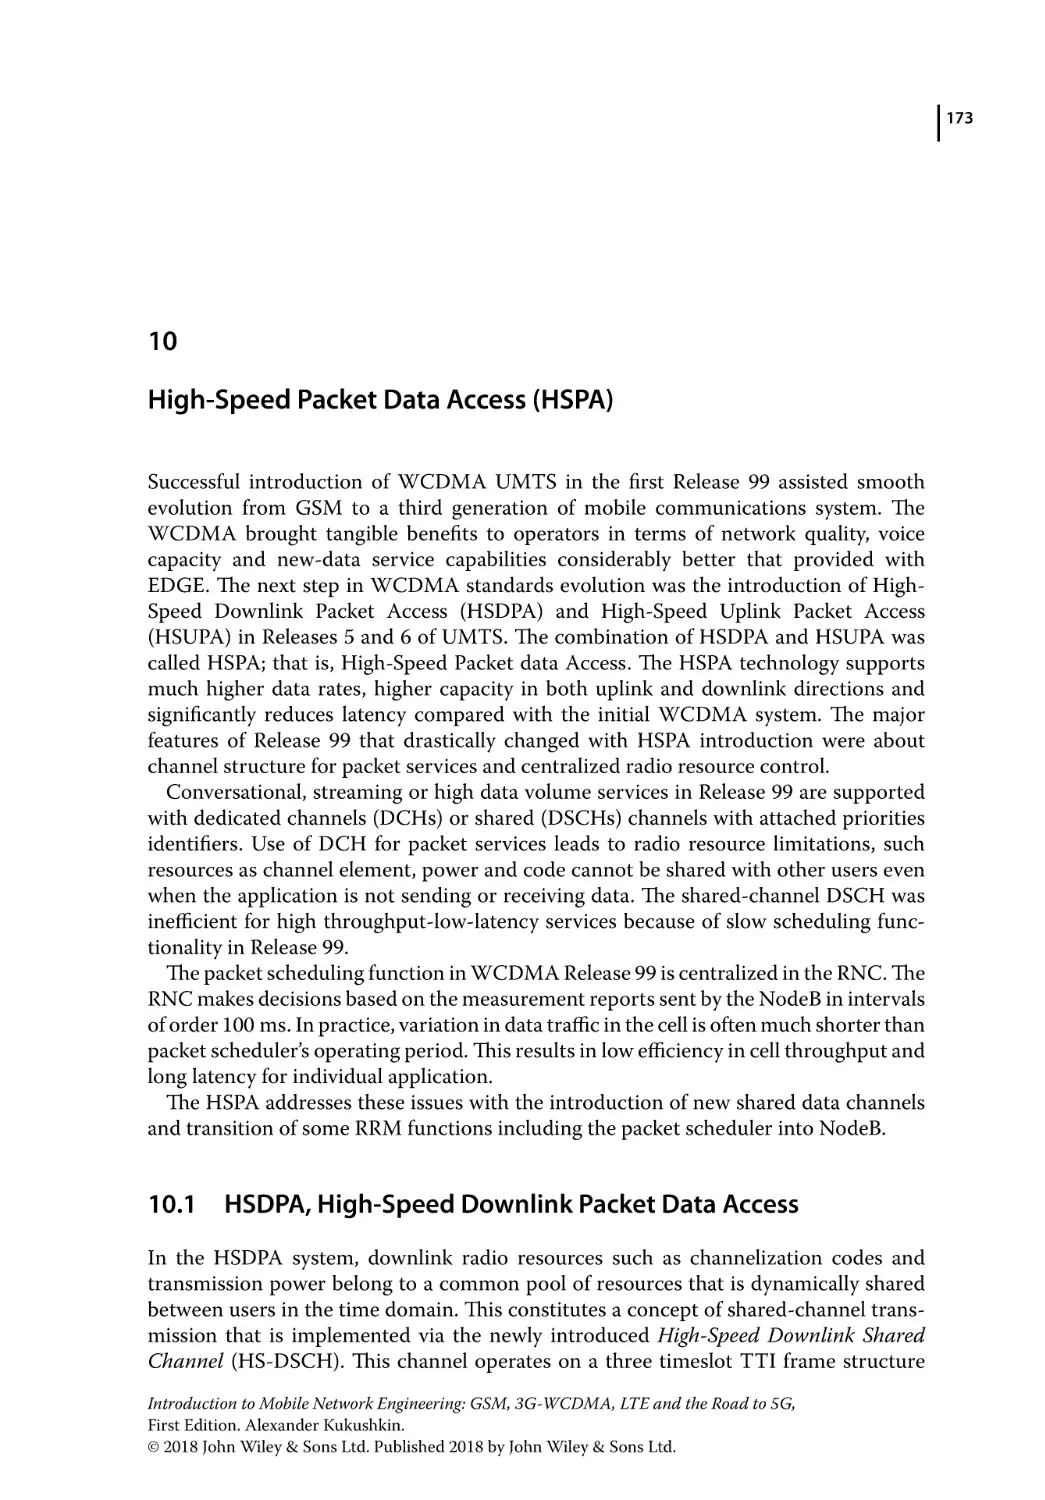 10 High-Speed Packet Data Access (HSPA)